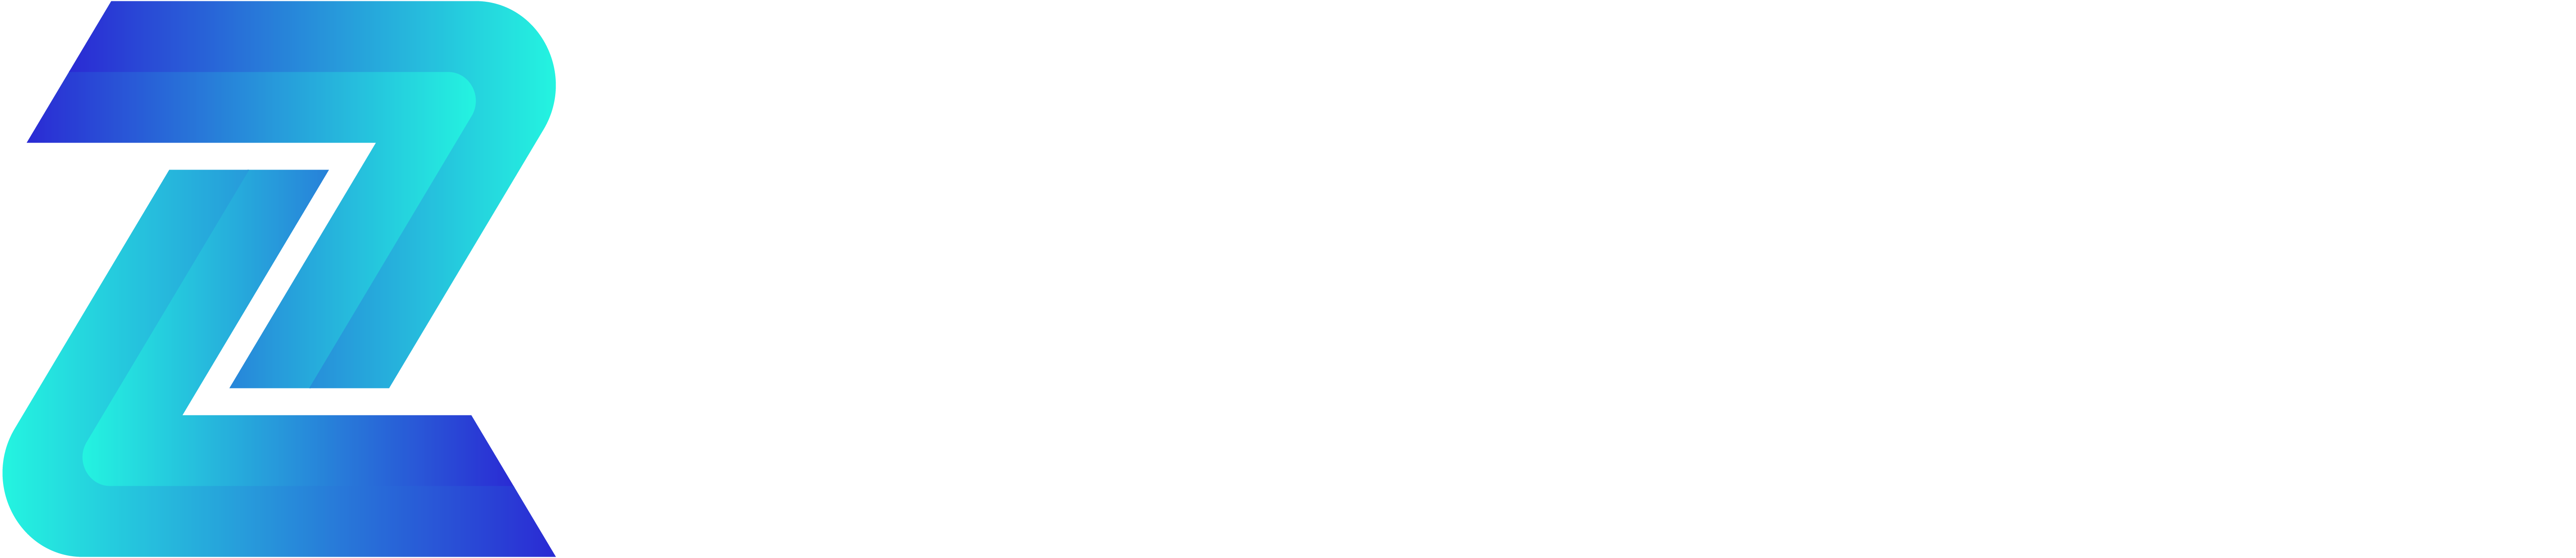 Logo aztech slogan 36